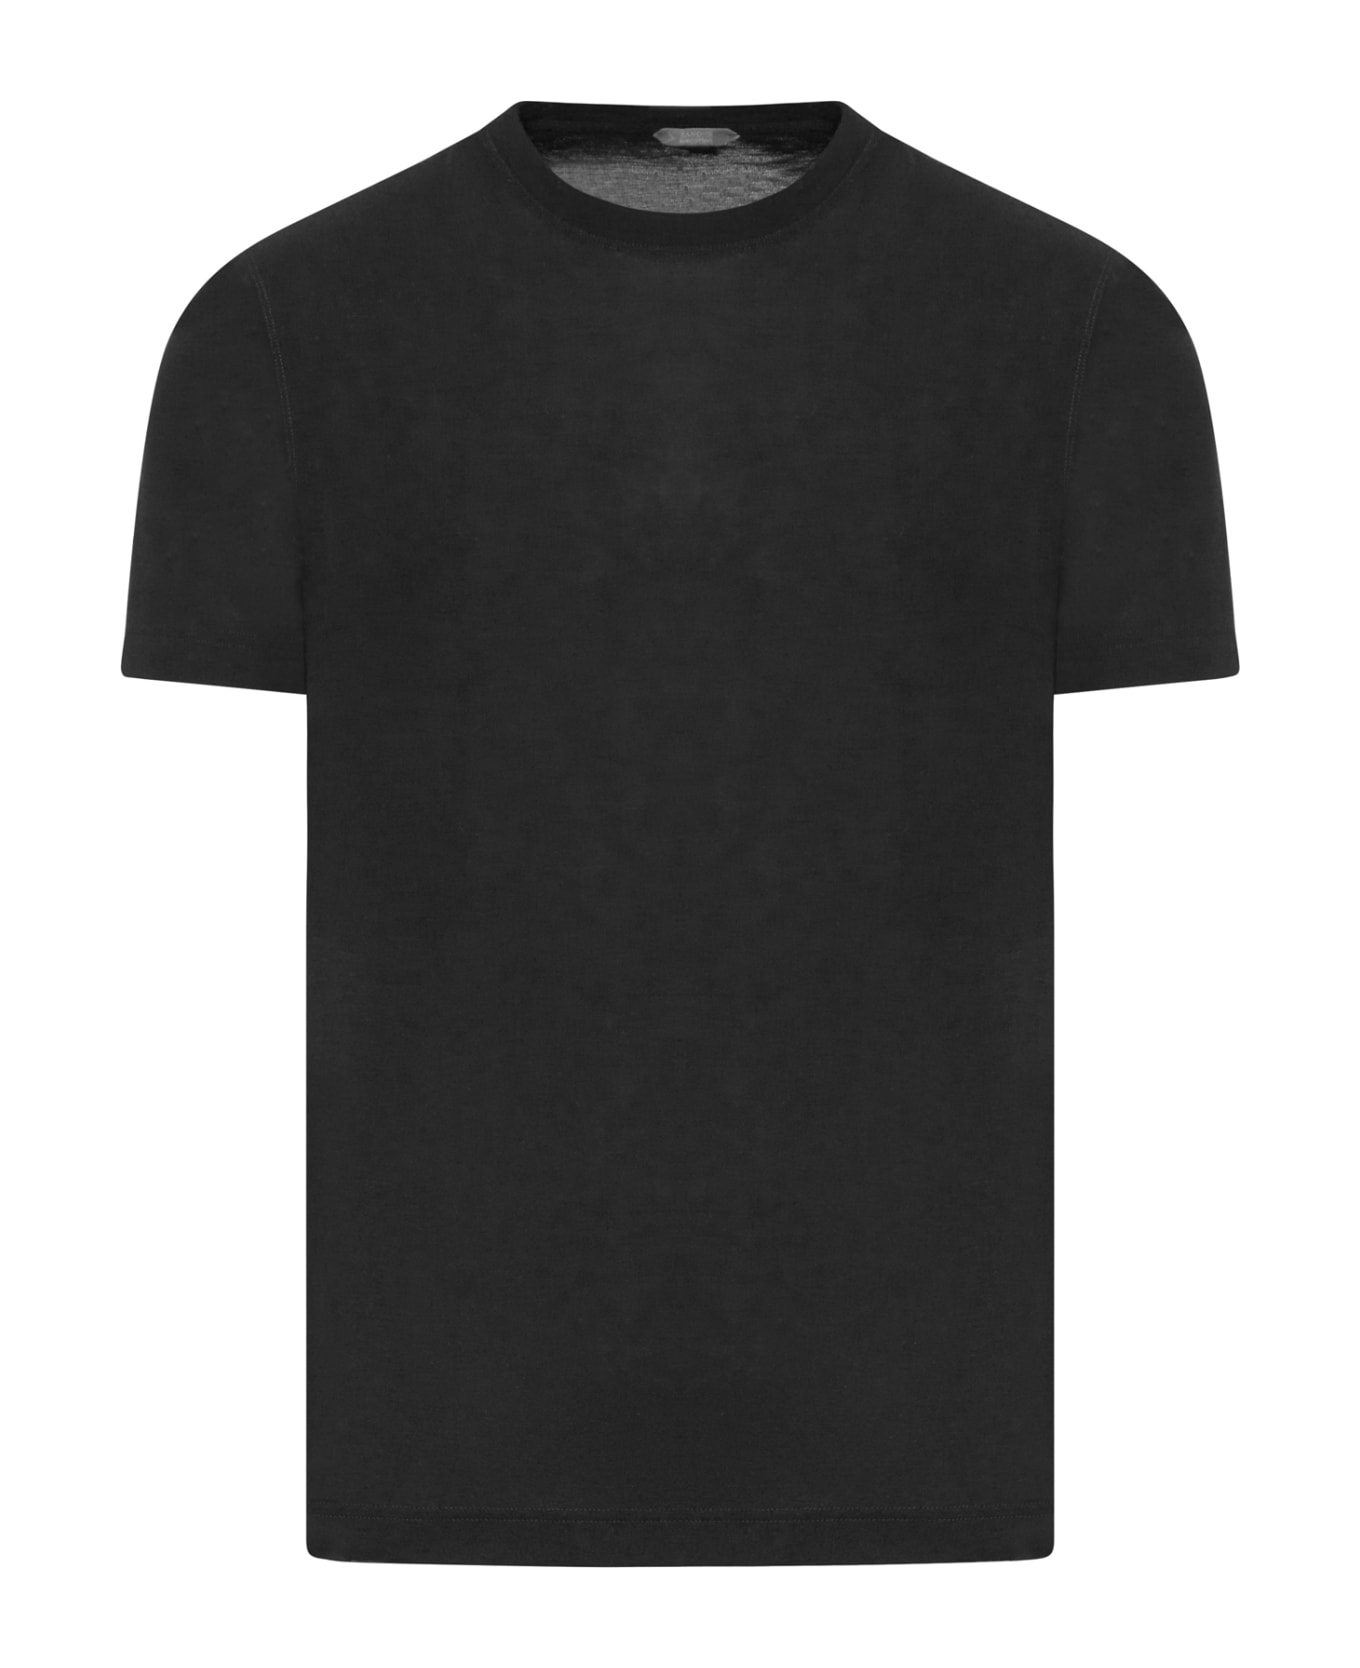 Zanone Tshirt Ss - Black シャツ